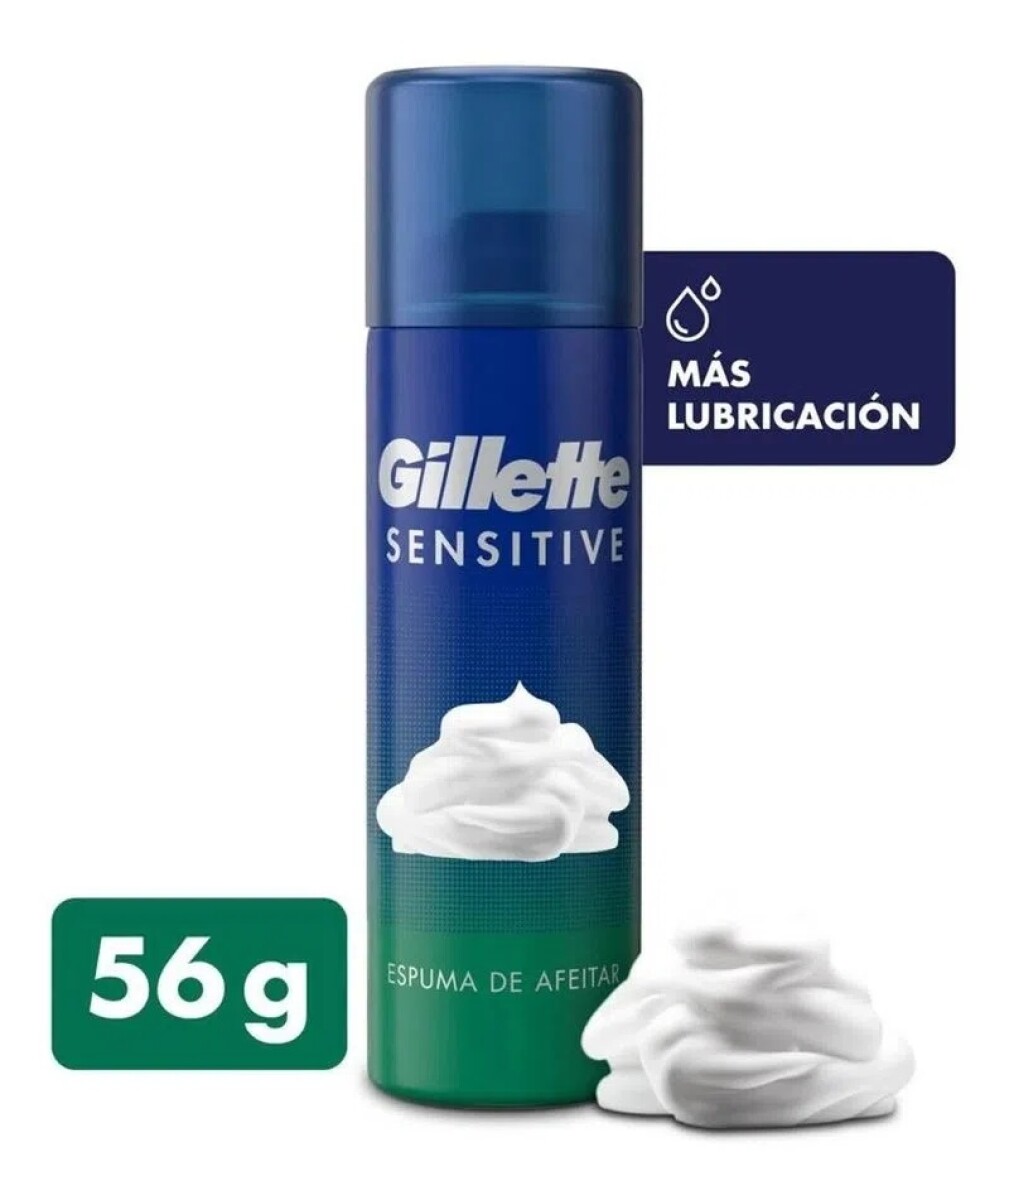 Gillette Foamy Sensitive 56g 